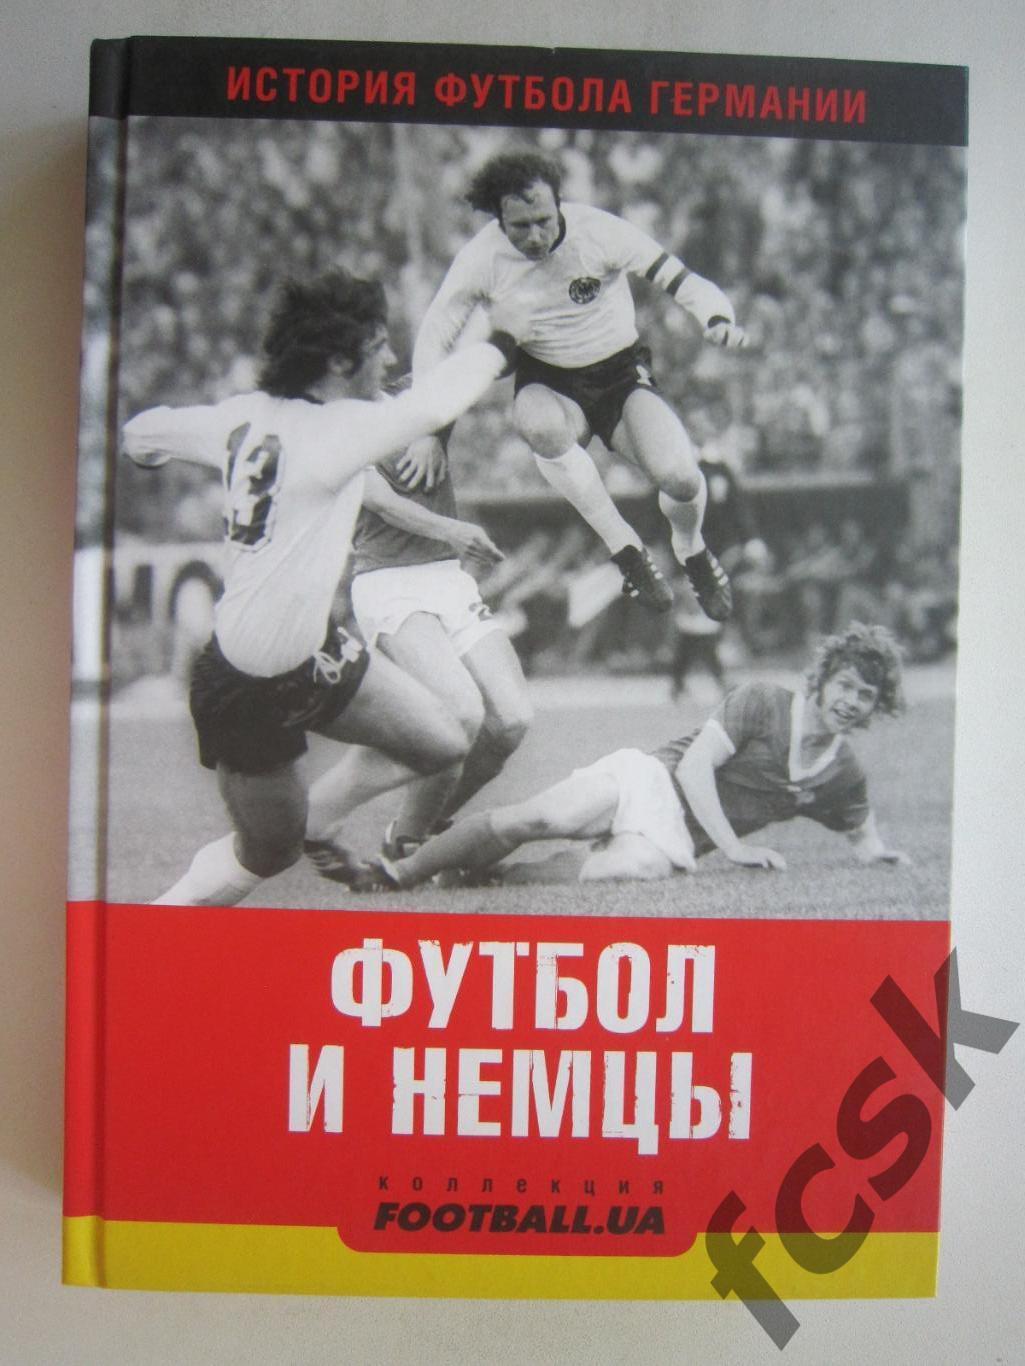 История футбола в Германии. Футбол и немцы. Киев, 2011 (ф3)